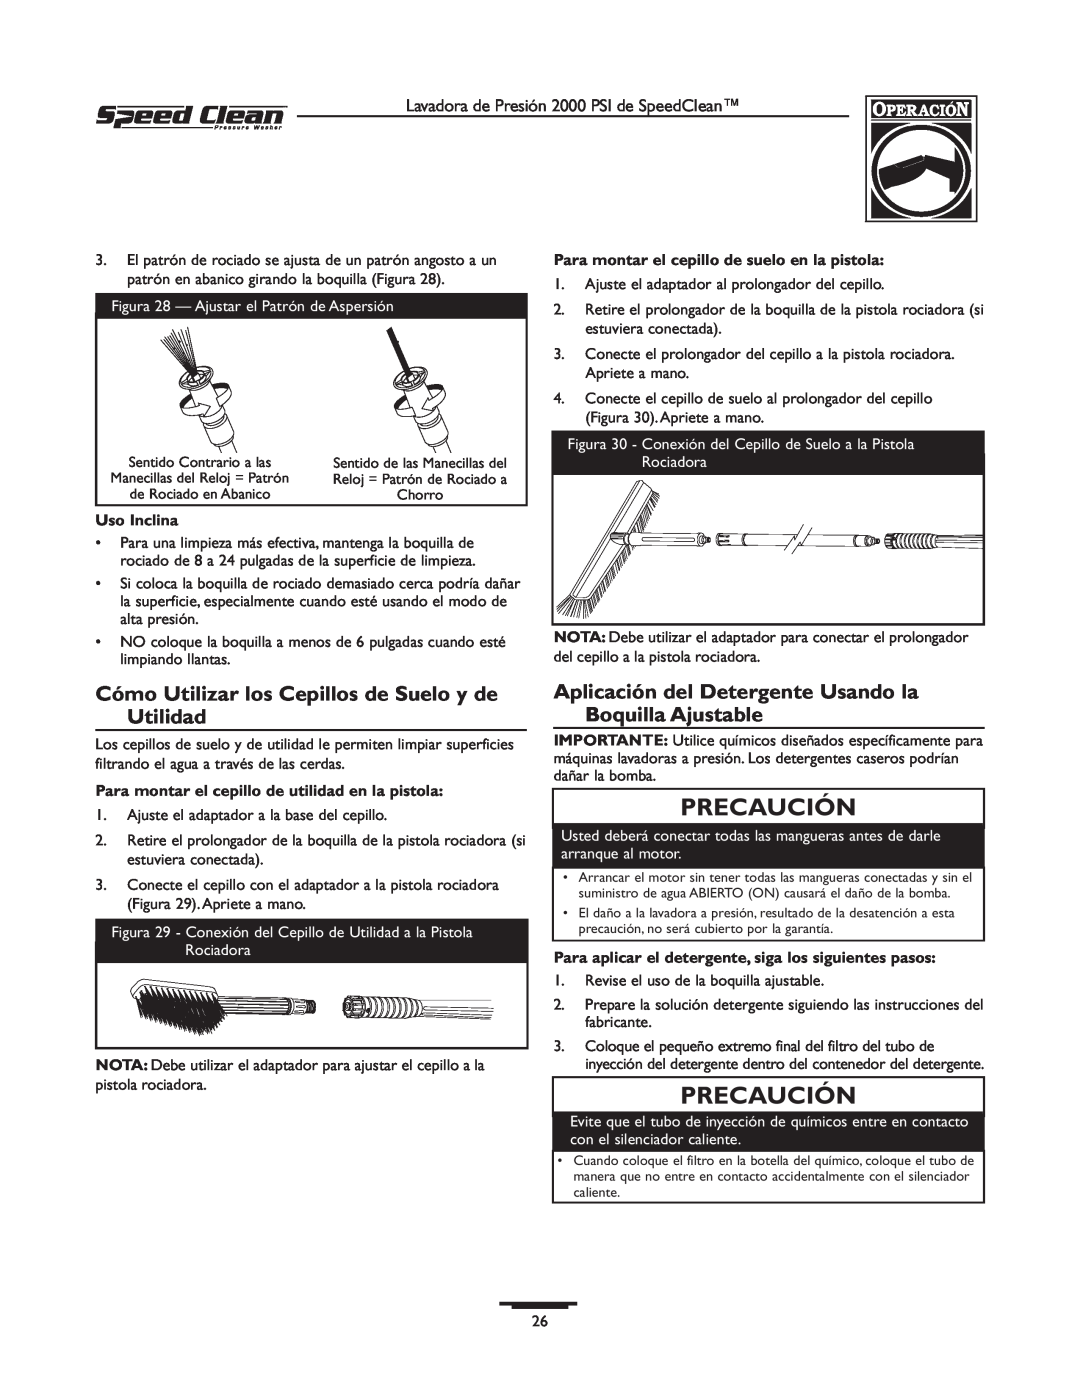 Briggs & Stratton 020239-1 owner manual Cómo Utilizar los Cepillos de Suelo y de Utilidad, Precaución, Uso Inclina 